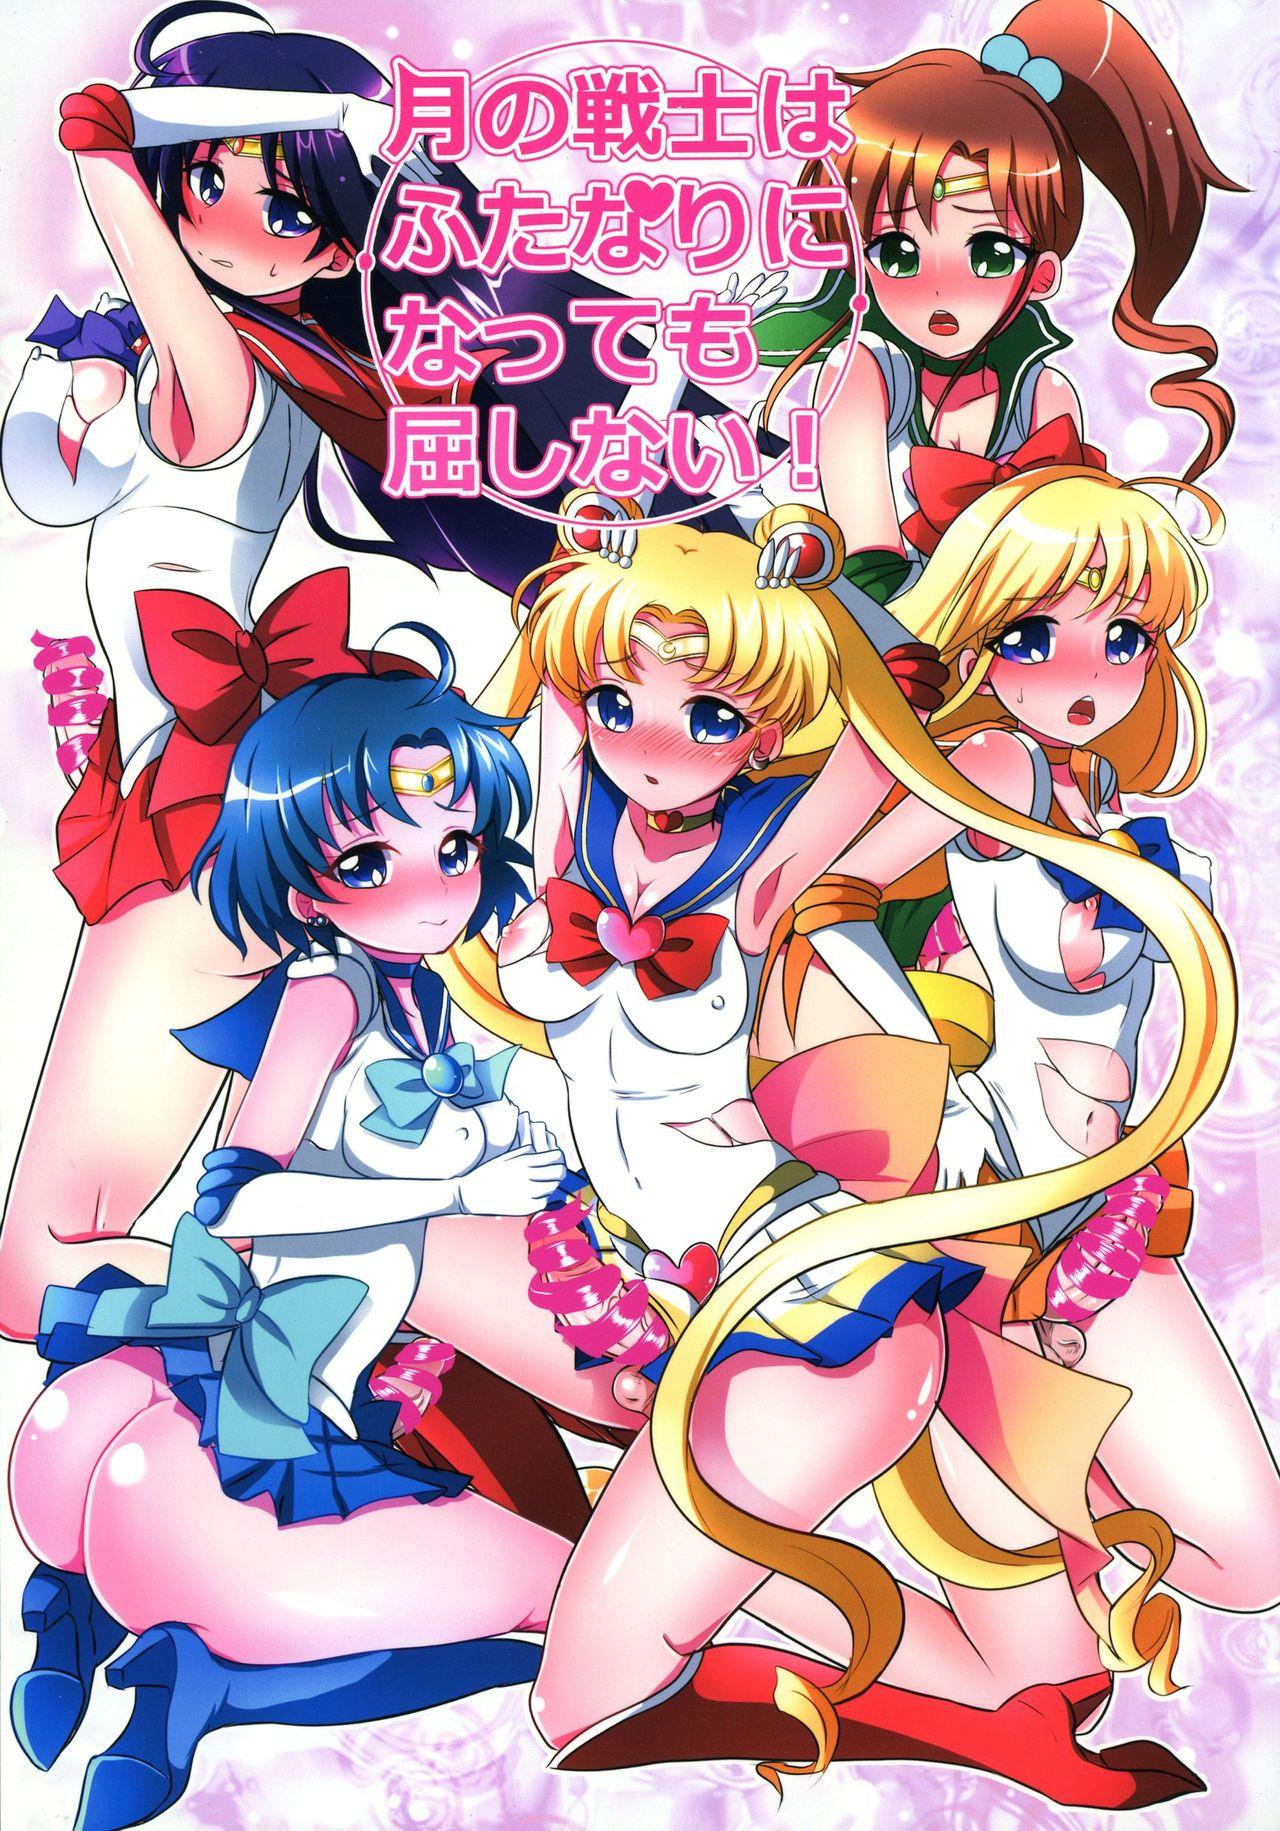 Hotporn Tsuki no Senshi wa Futanari ni natte mo Kusshinai! - Sailor moon Shower - Picture 1